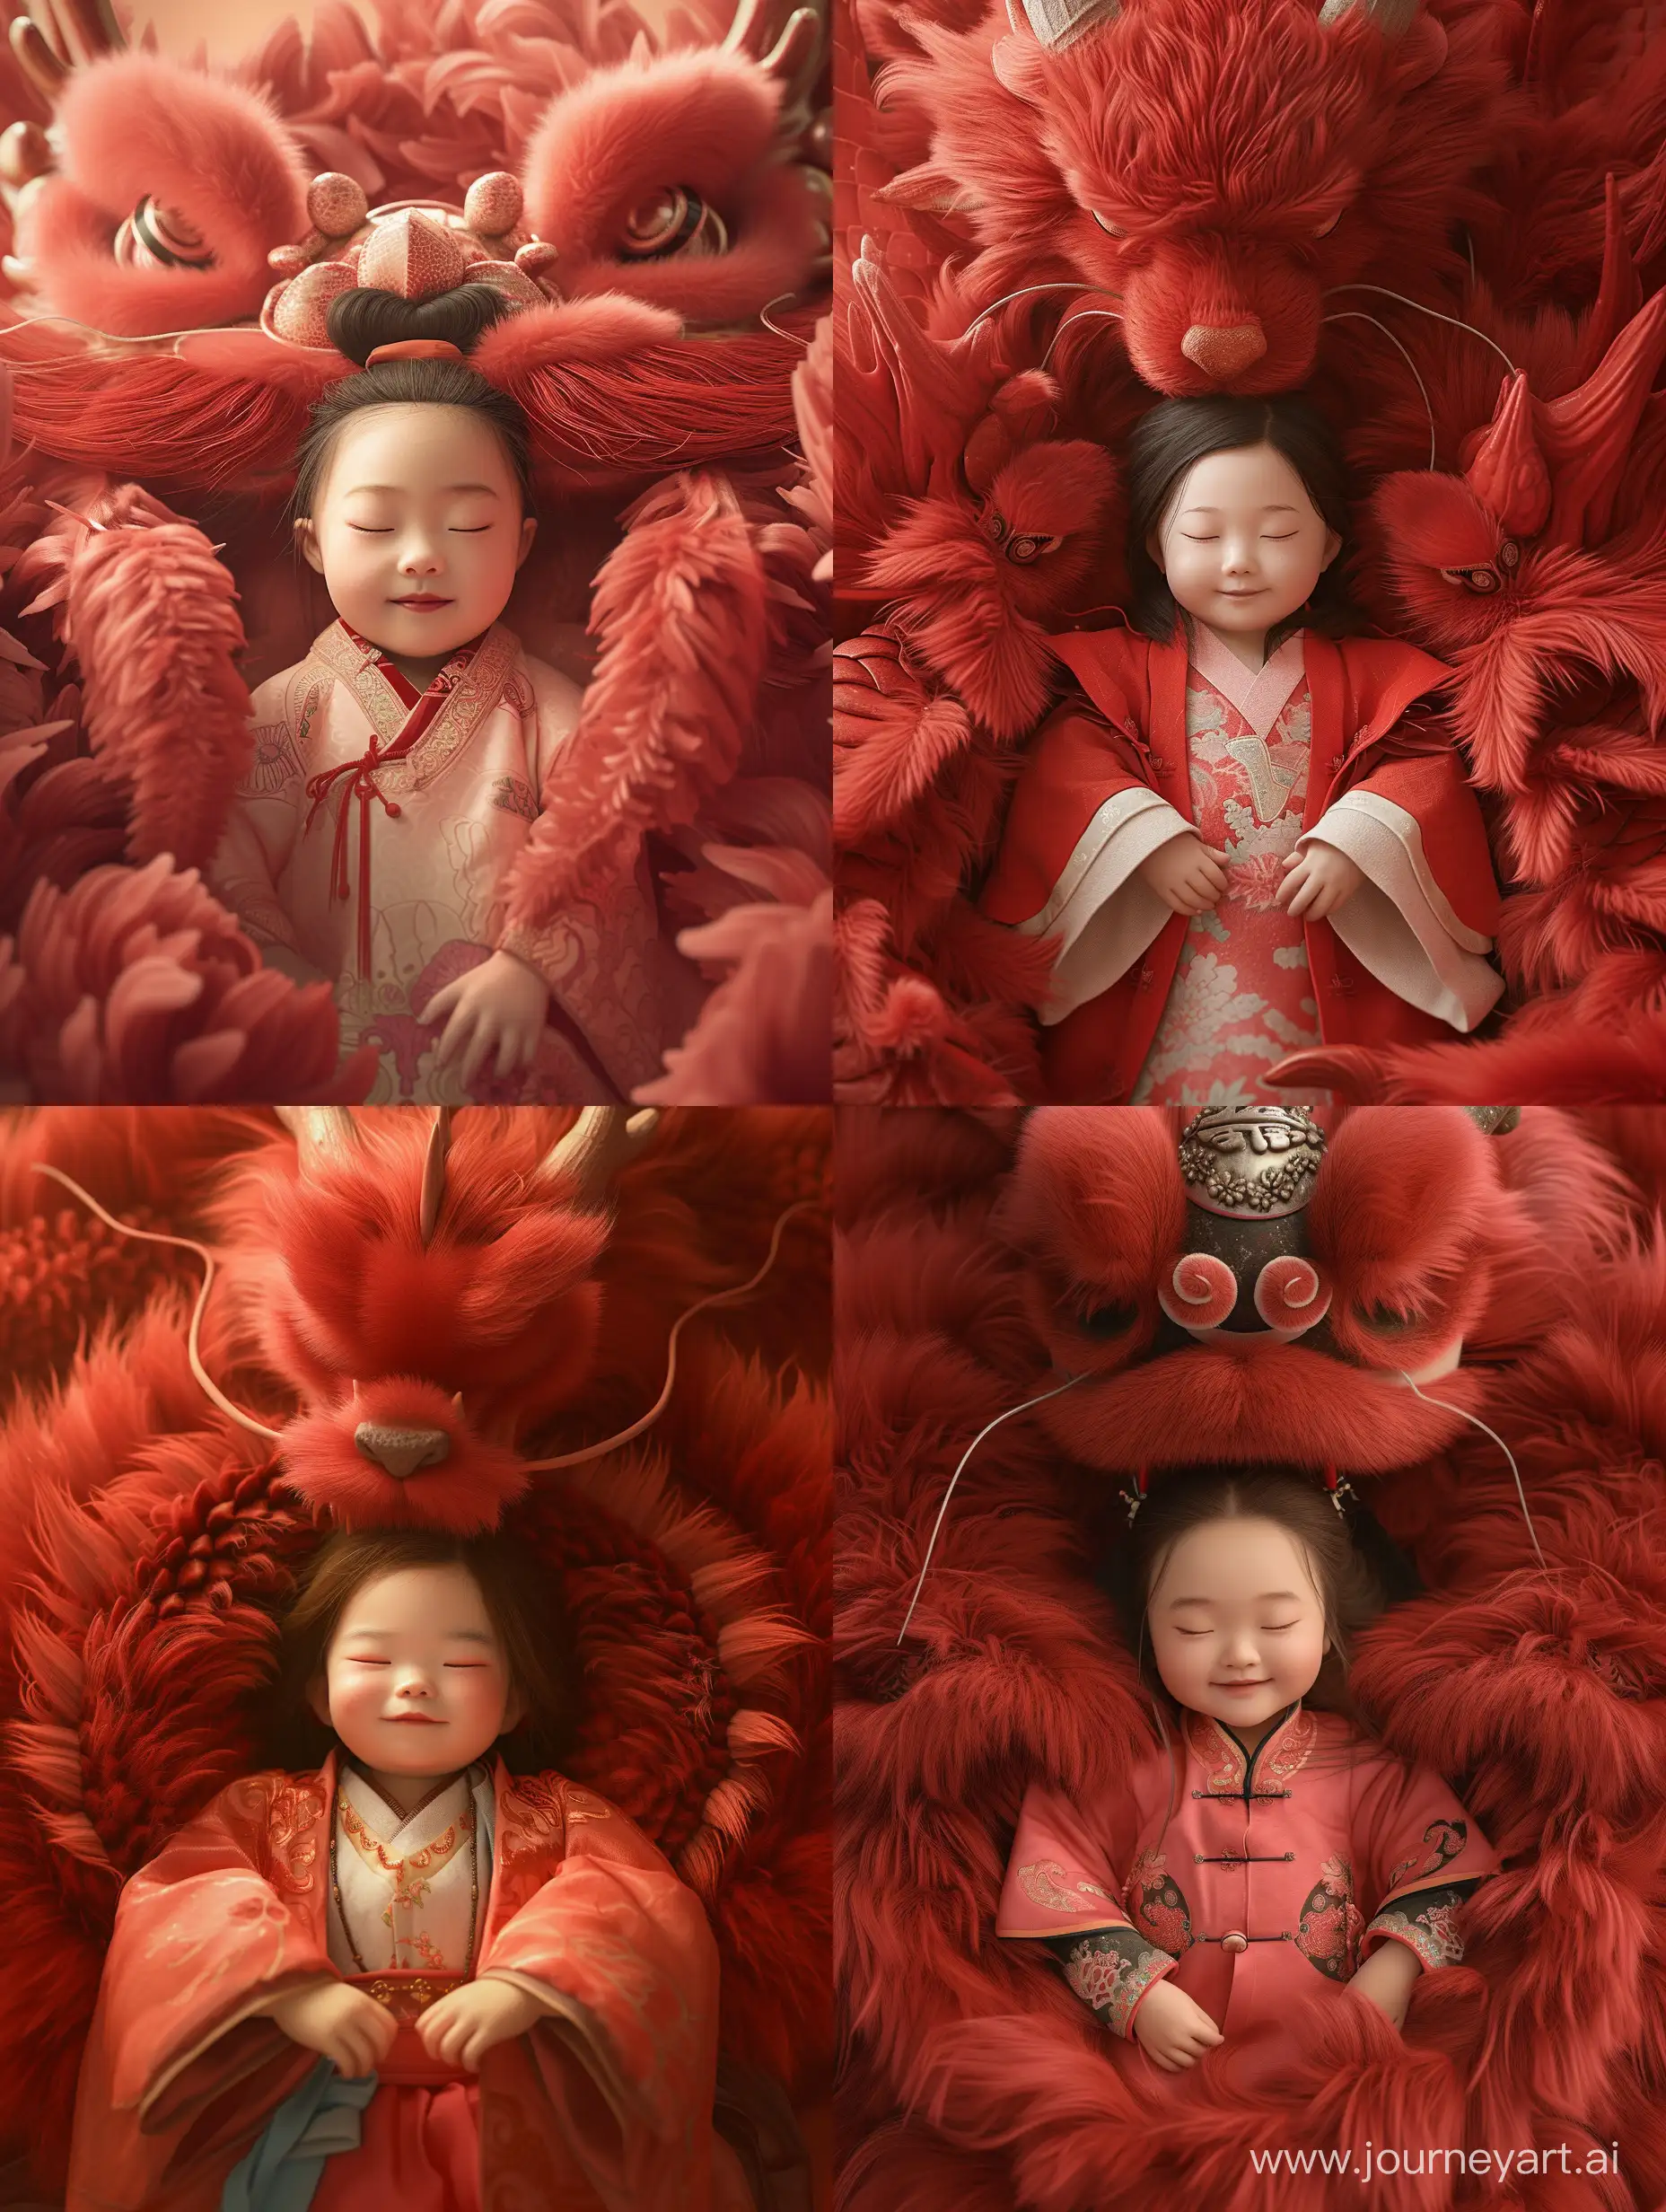 一个1岁的女孩，穿着传统的中国服装，一条梦幻般的红色巨龙环绕着保护着女孩，巨龙闭着眼睛，蓬松的皮毛，原色是红色。女孩姿势帅气，笑容可掬。该图像包括正面、半身拍摄。画面风格灵感来源于三国南北朝，OC渲染，C4D